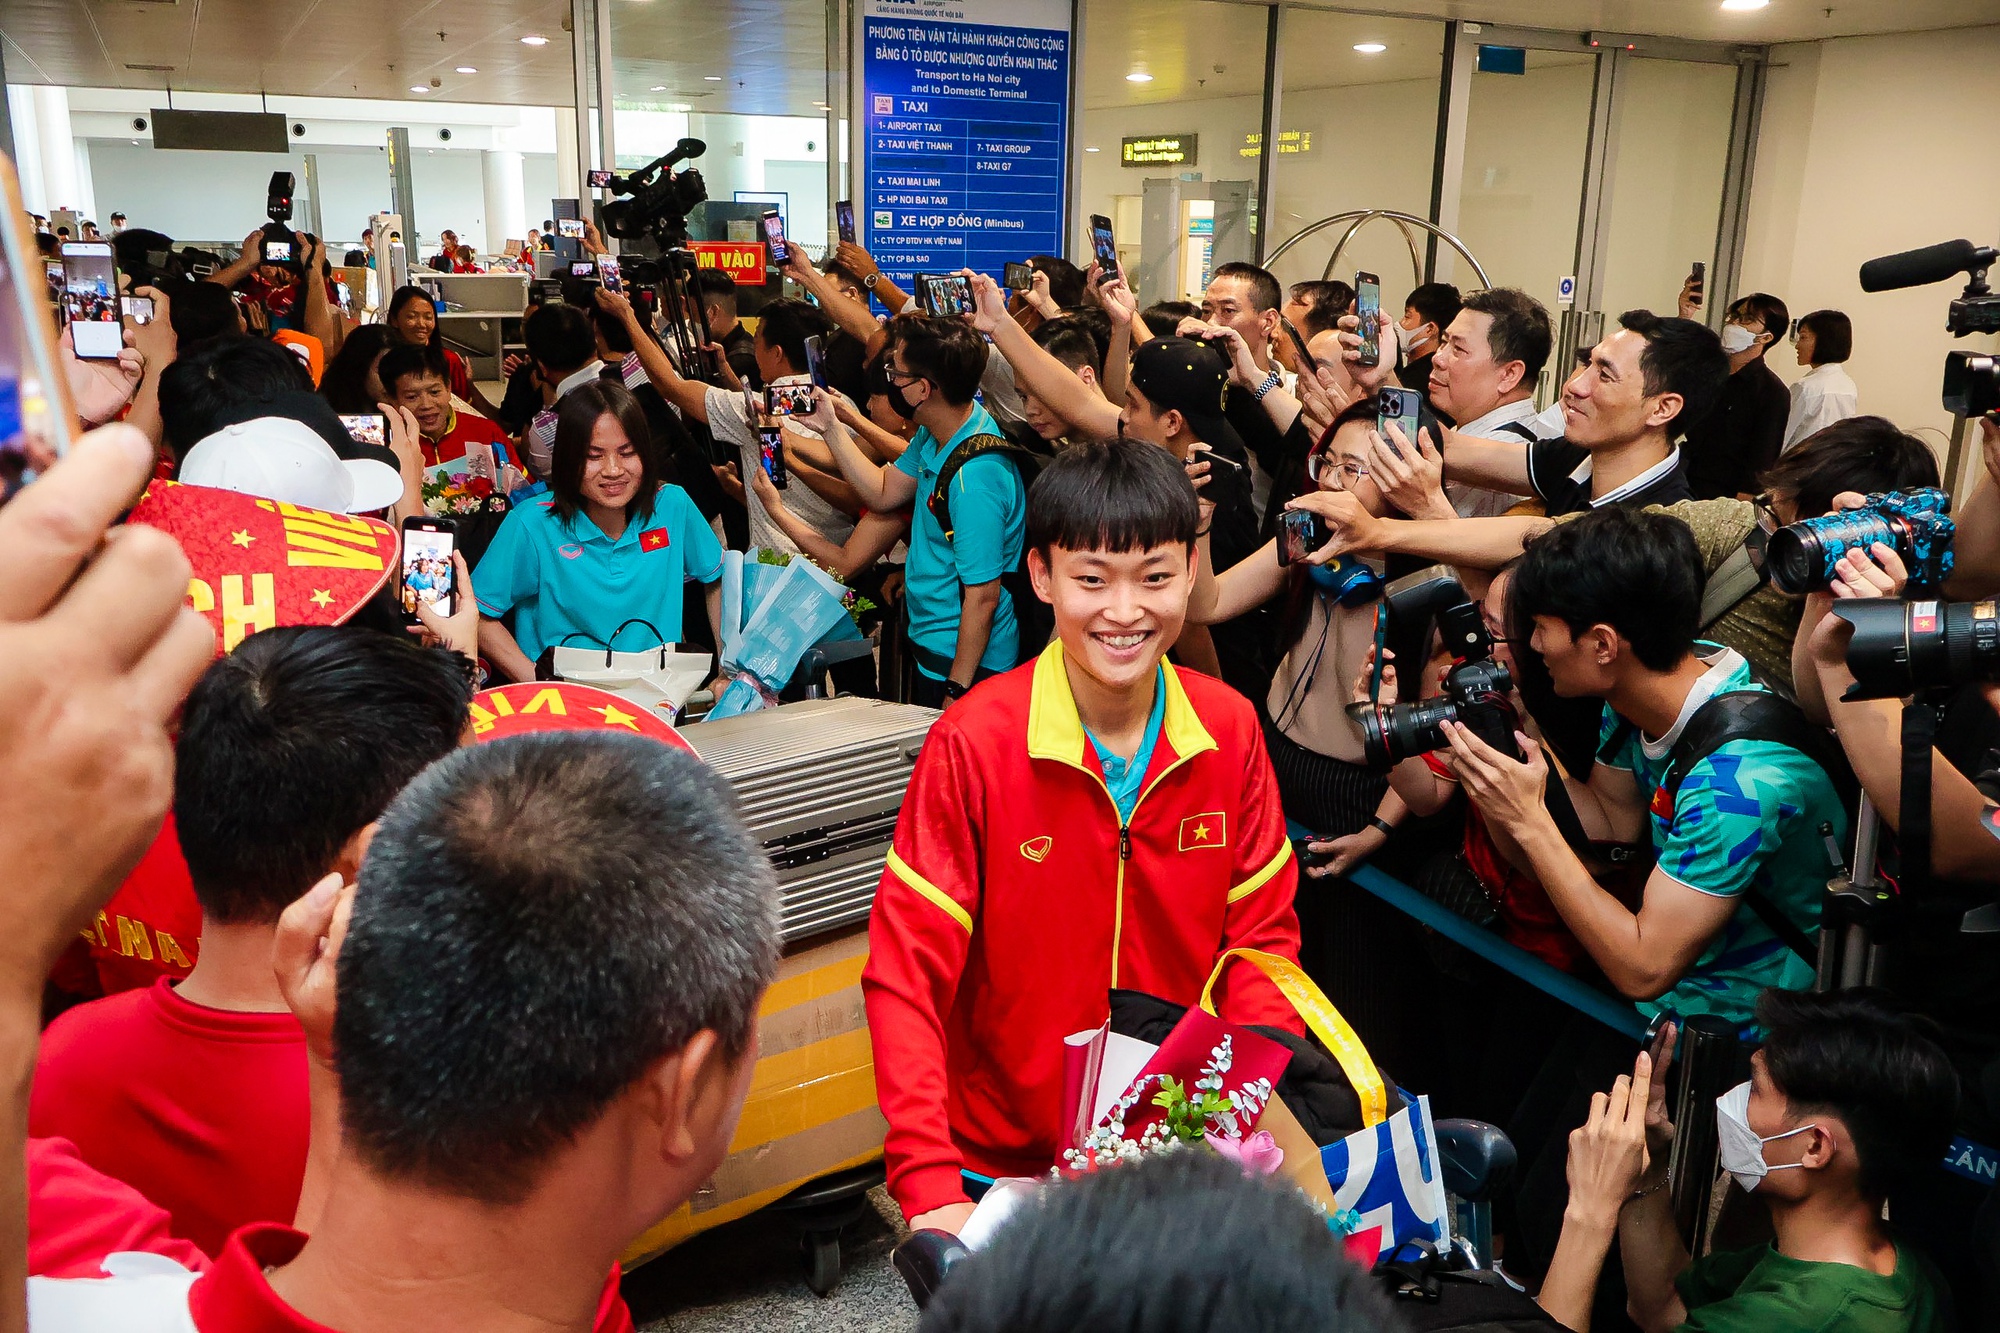 HLV Mai Đức Chung cùng nữ tuyển thủ rạng ngời trở về sau hành trình World Cup lịch sử - Ảnh 9.